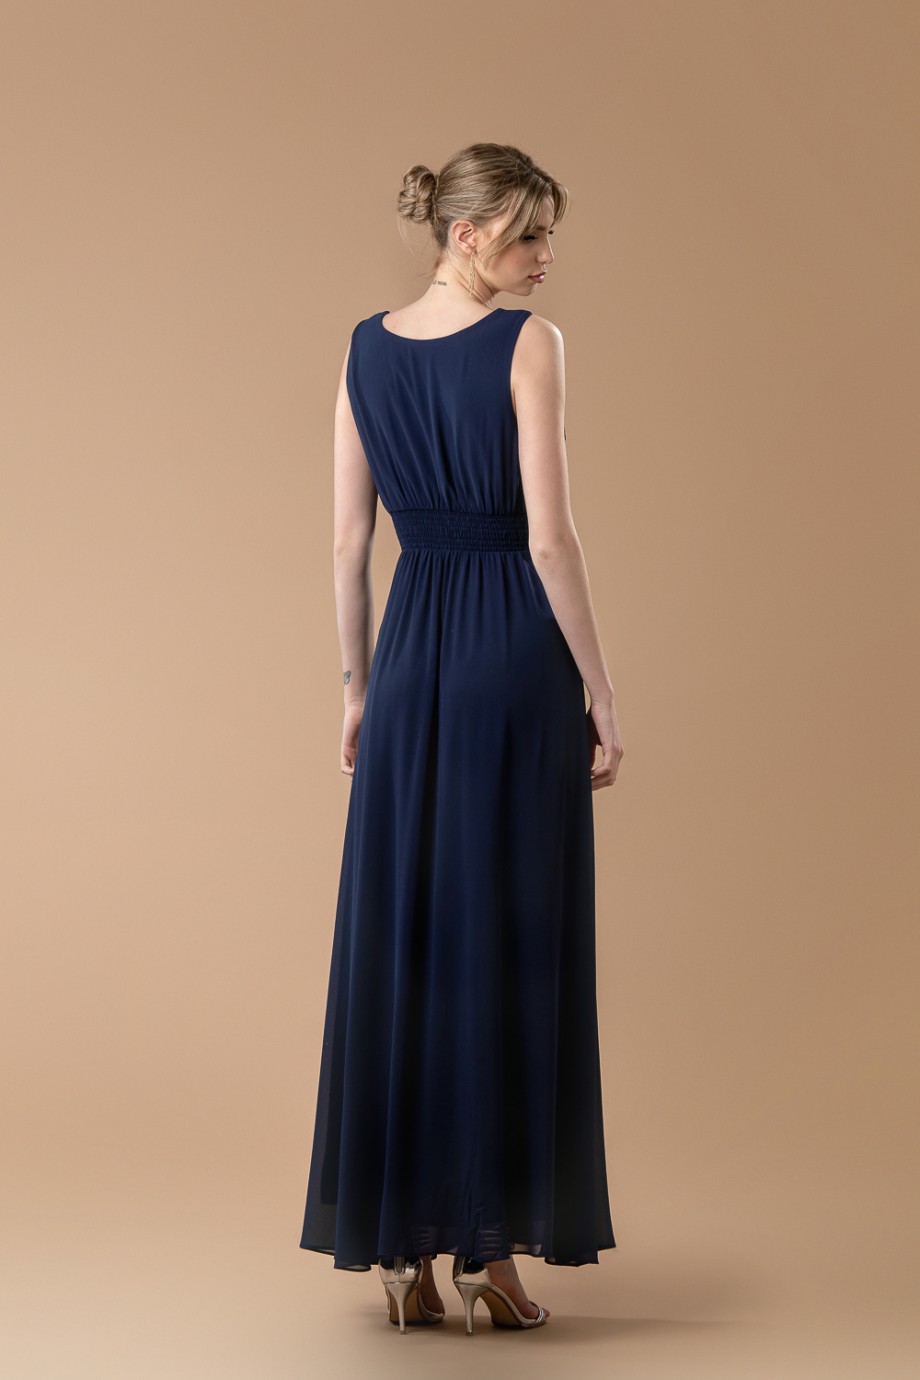 Μακρύ μπλε σκούρο φόρεμα με ιδιαίτερο μπούστο